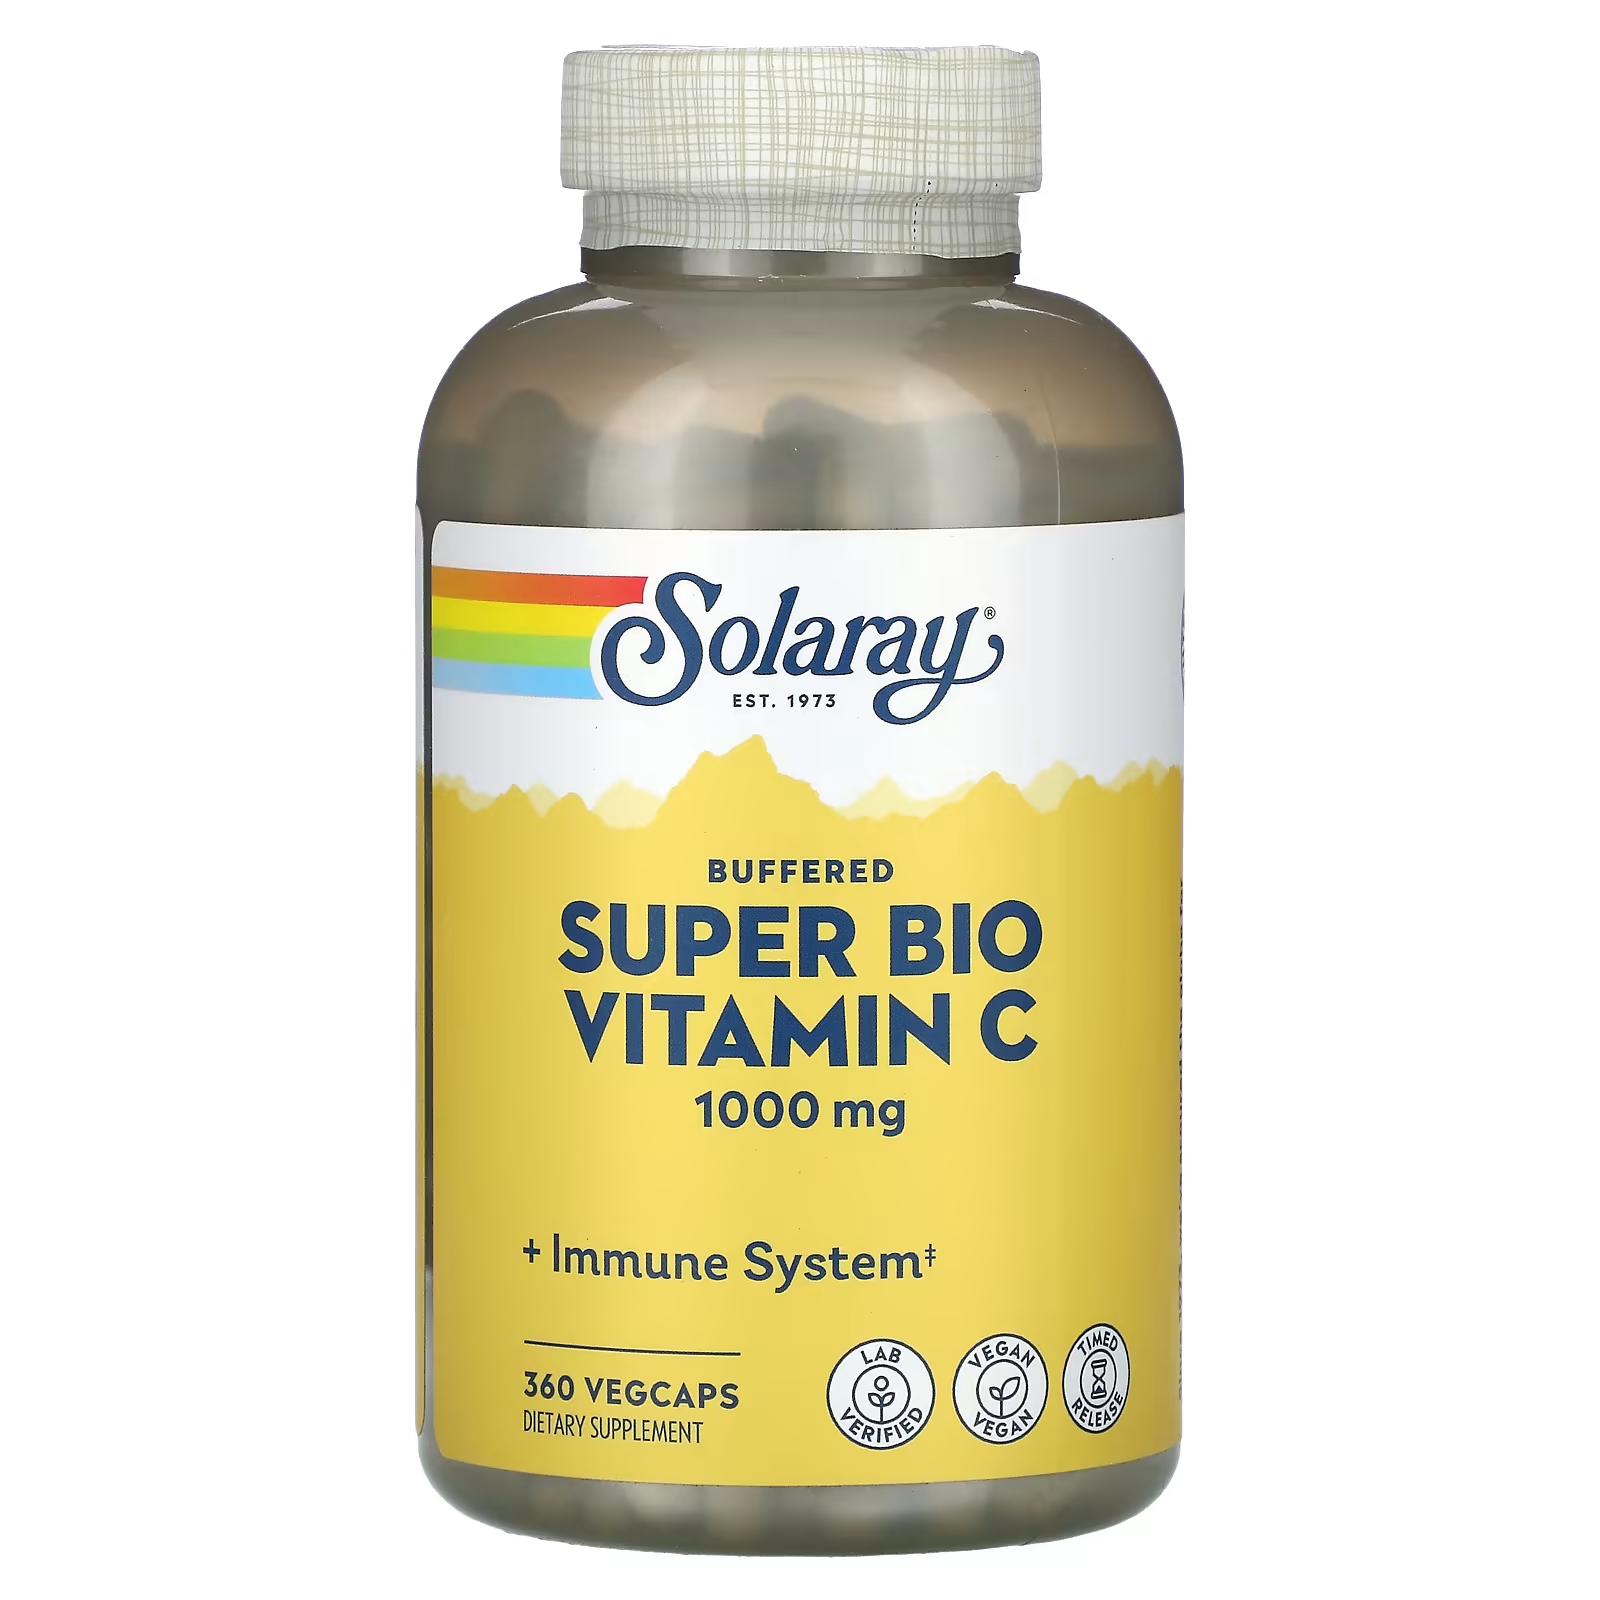 Буферизованный супербио витамин С Solaray, 1000 мг, 360 растительных капсул (500 мг на капсулу) solaray буферизованный витамин c 500 мг 100 растительных капсул